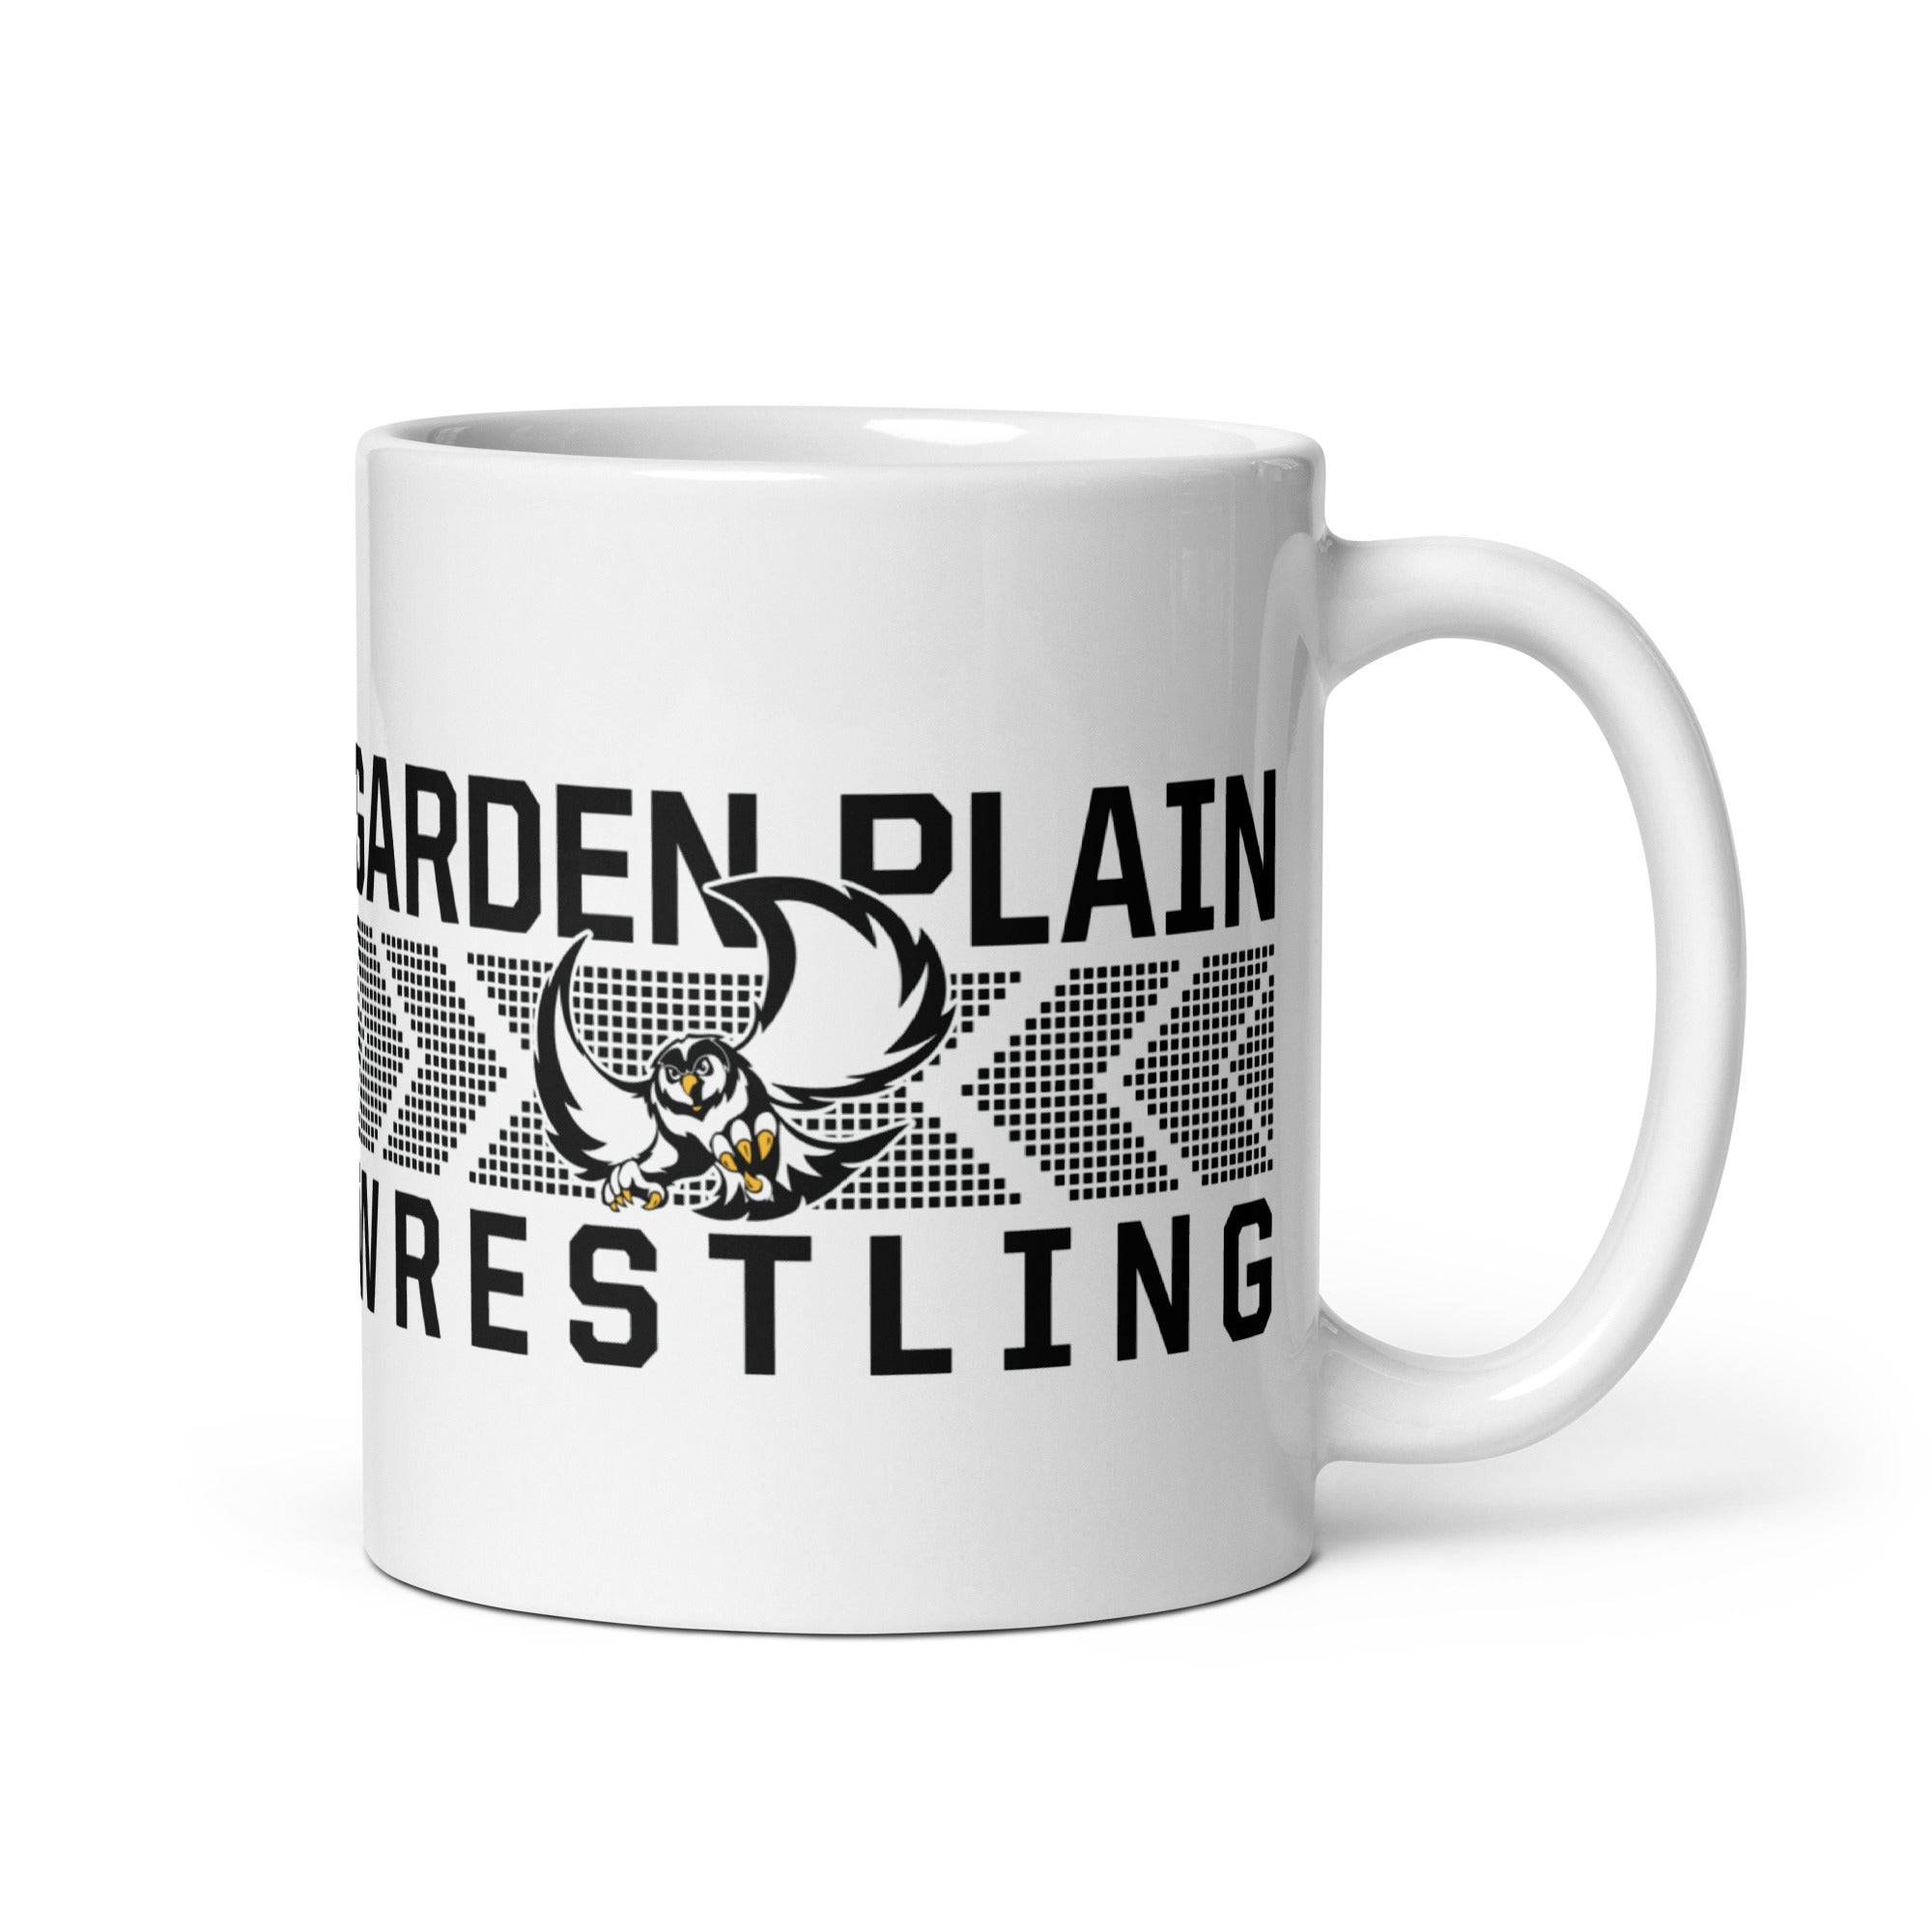 Garden Plain High School Wrestling White Glossy Mug